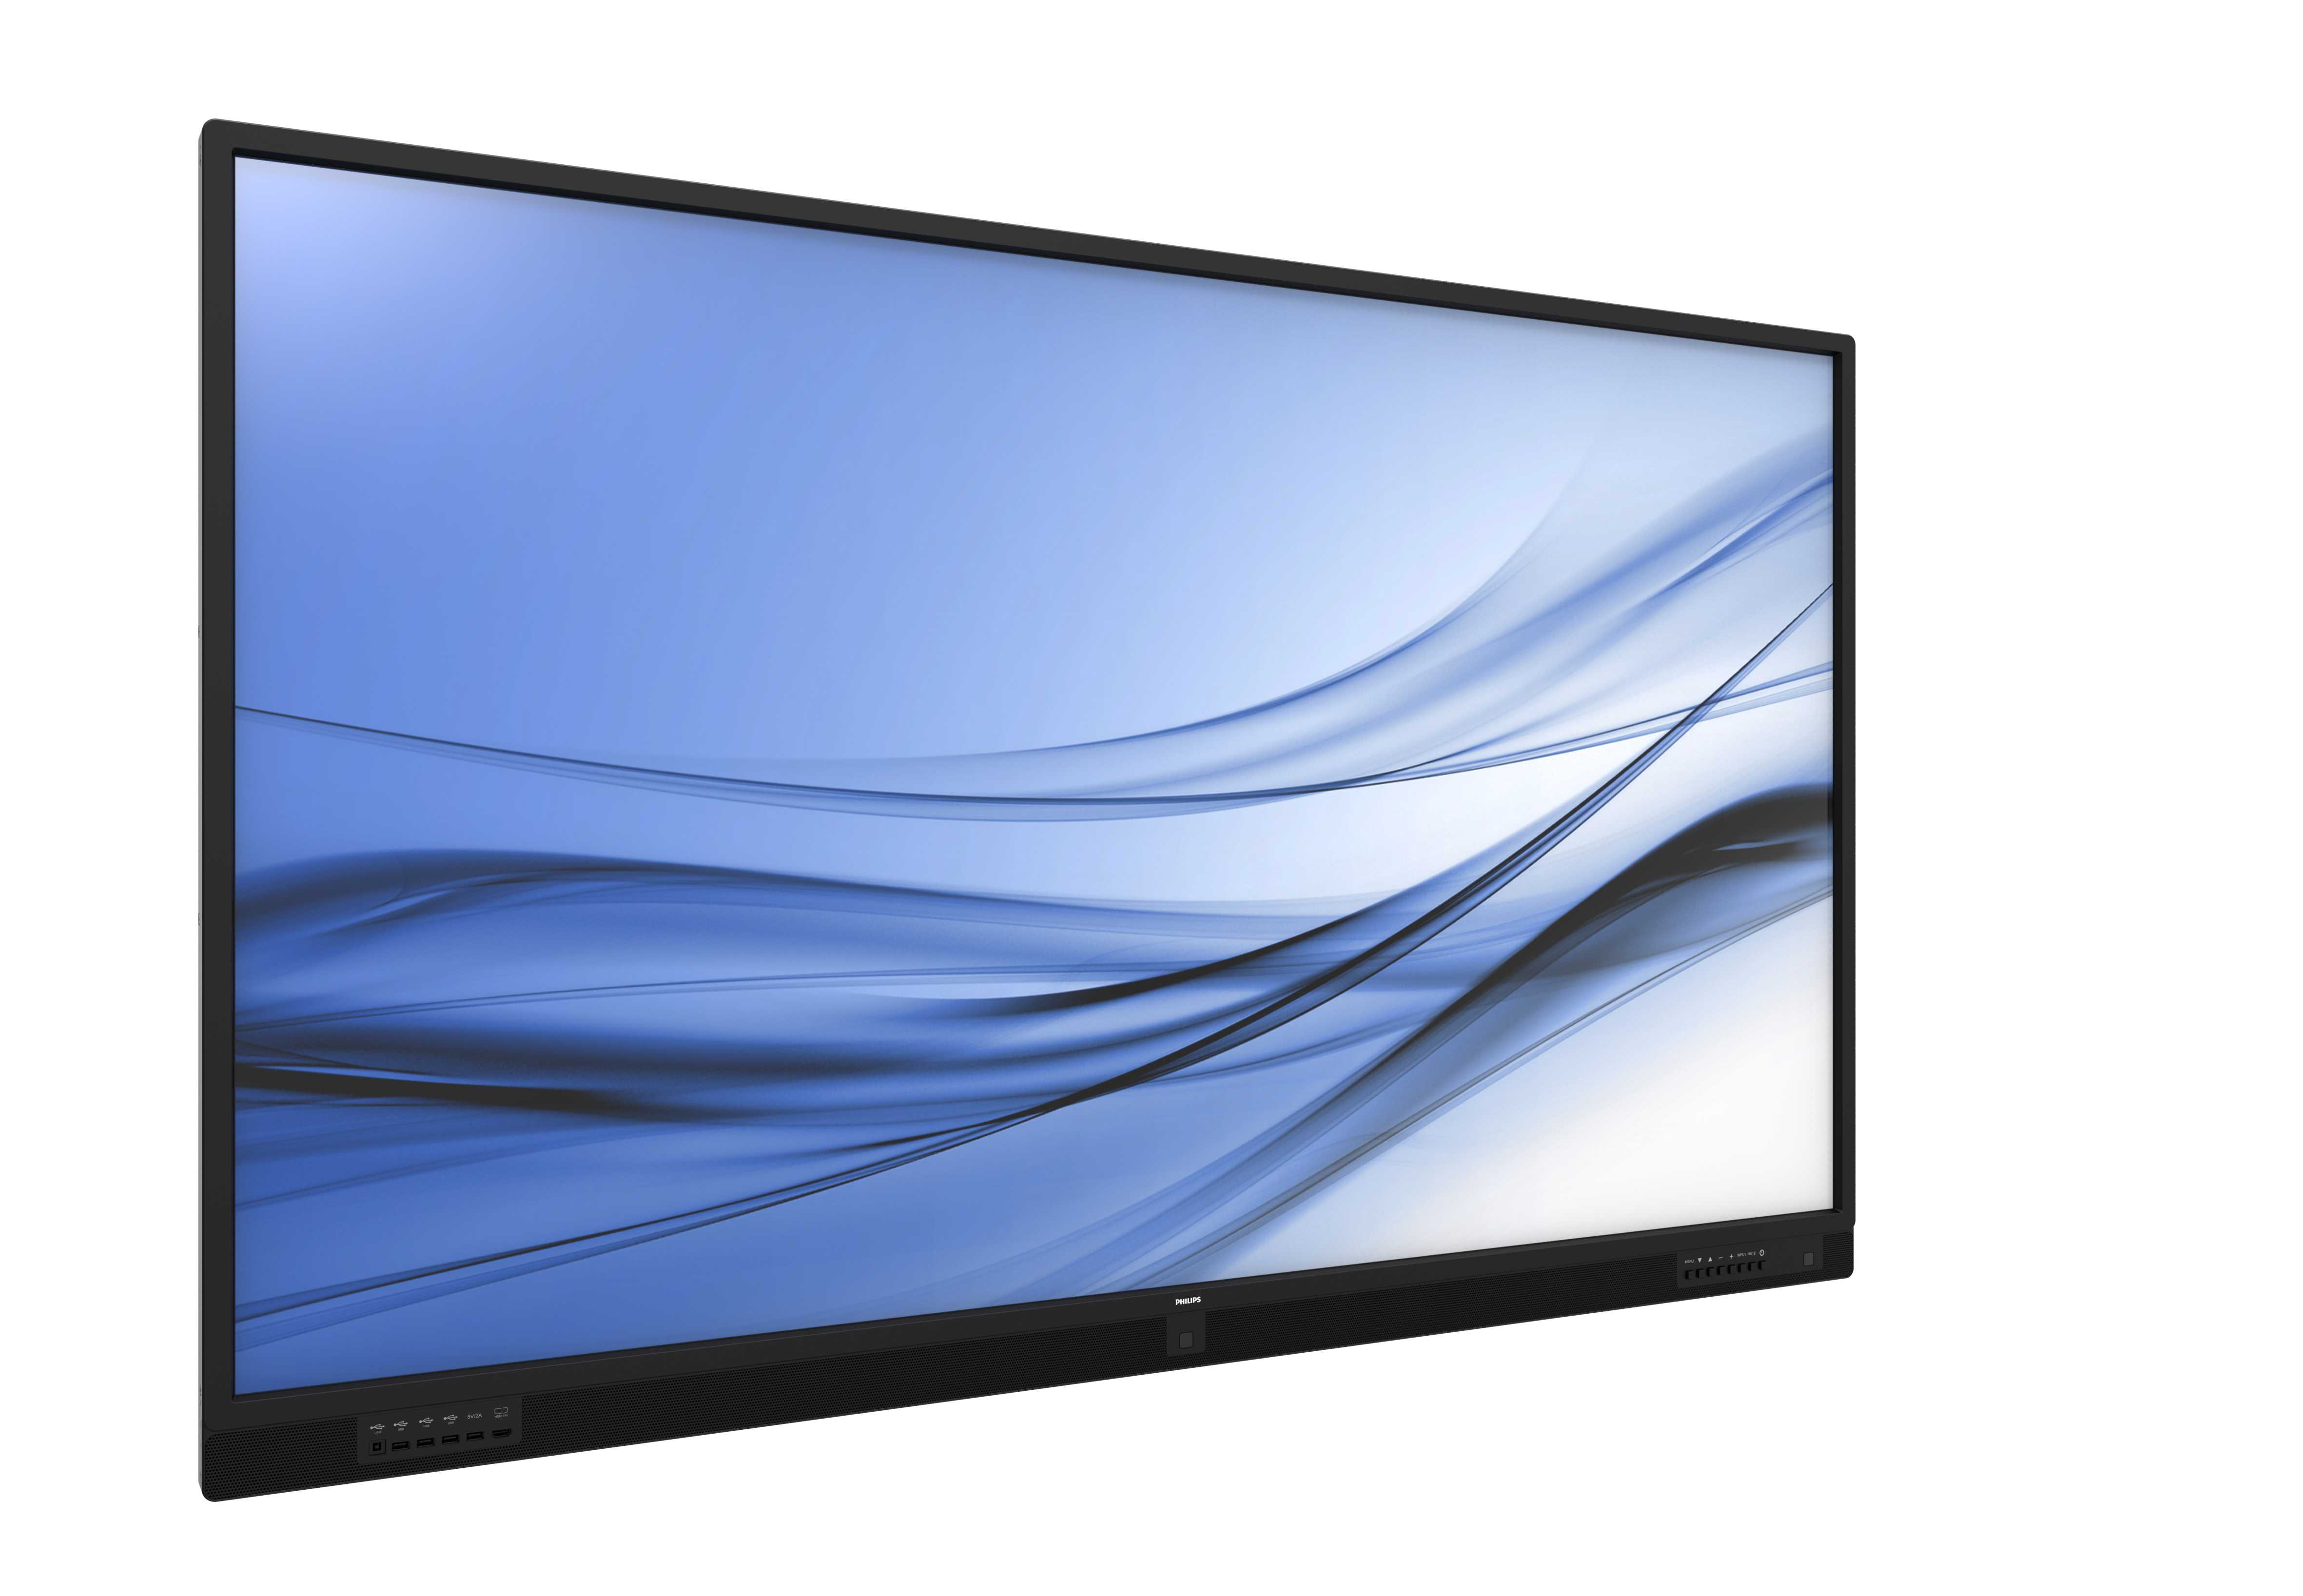 Телевизор Philips BDL4610Q - подробные характеристики обзоры видео фото Цены в интернет-магазинах где можно купить телевизор Philips BDL4610Q